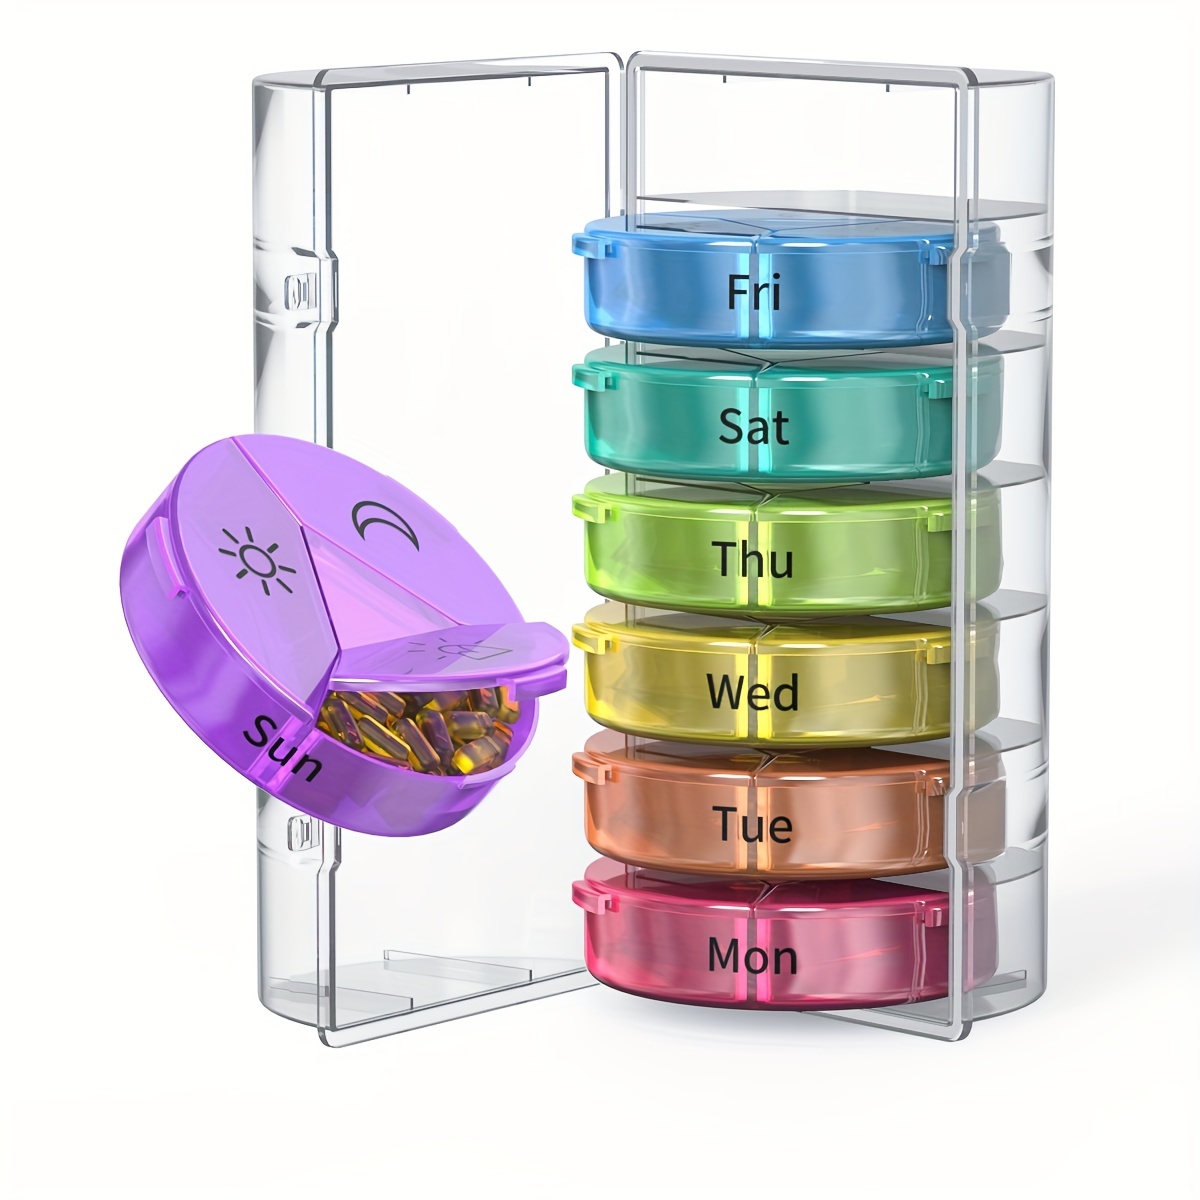 21 Grids Weekly Pill Organizer Moistureproof Daily Cute Pill Box